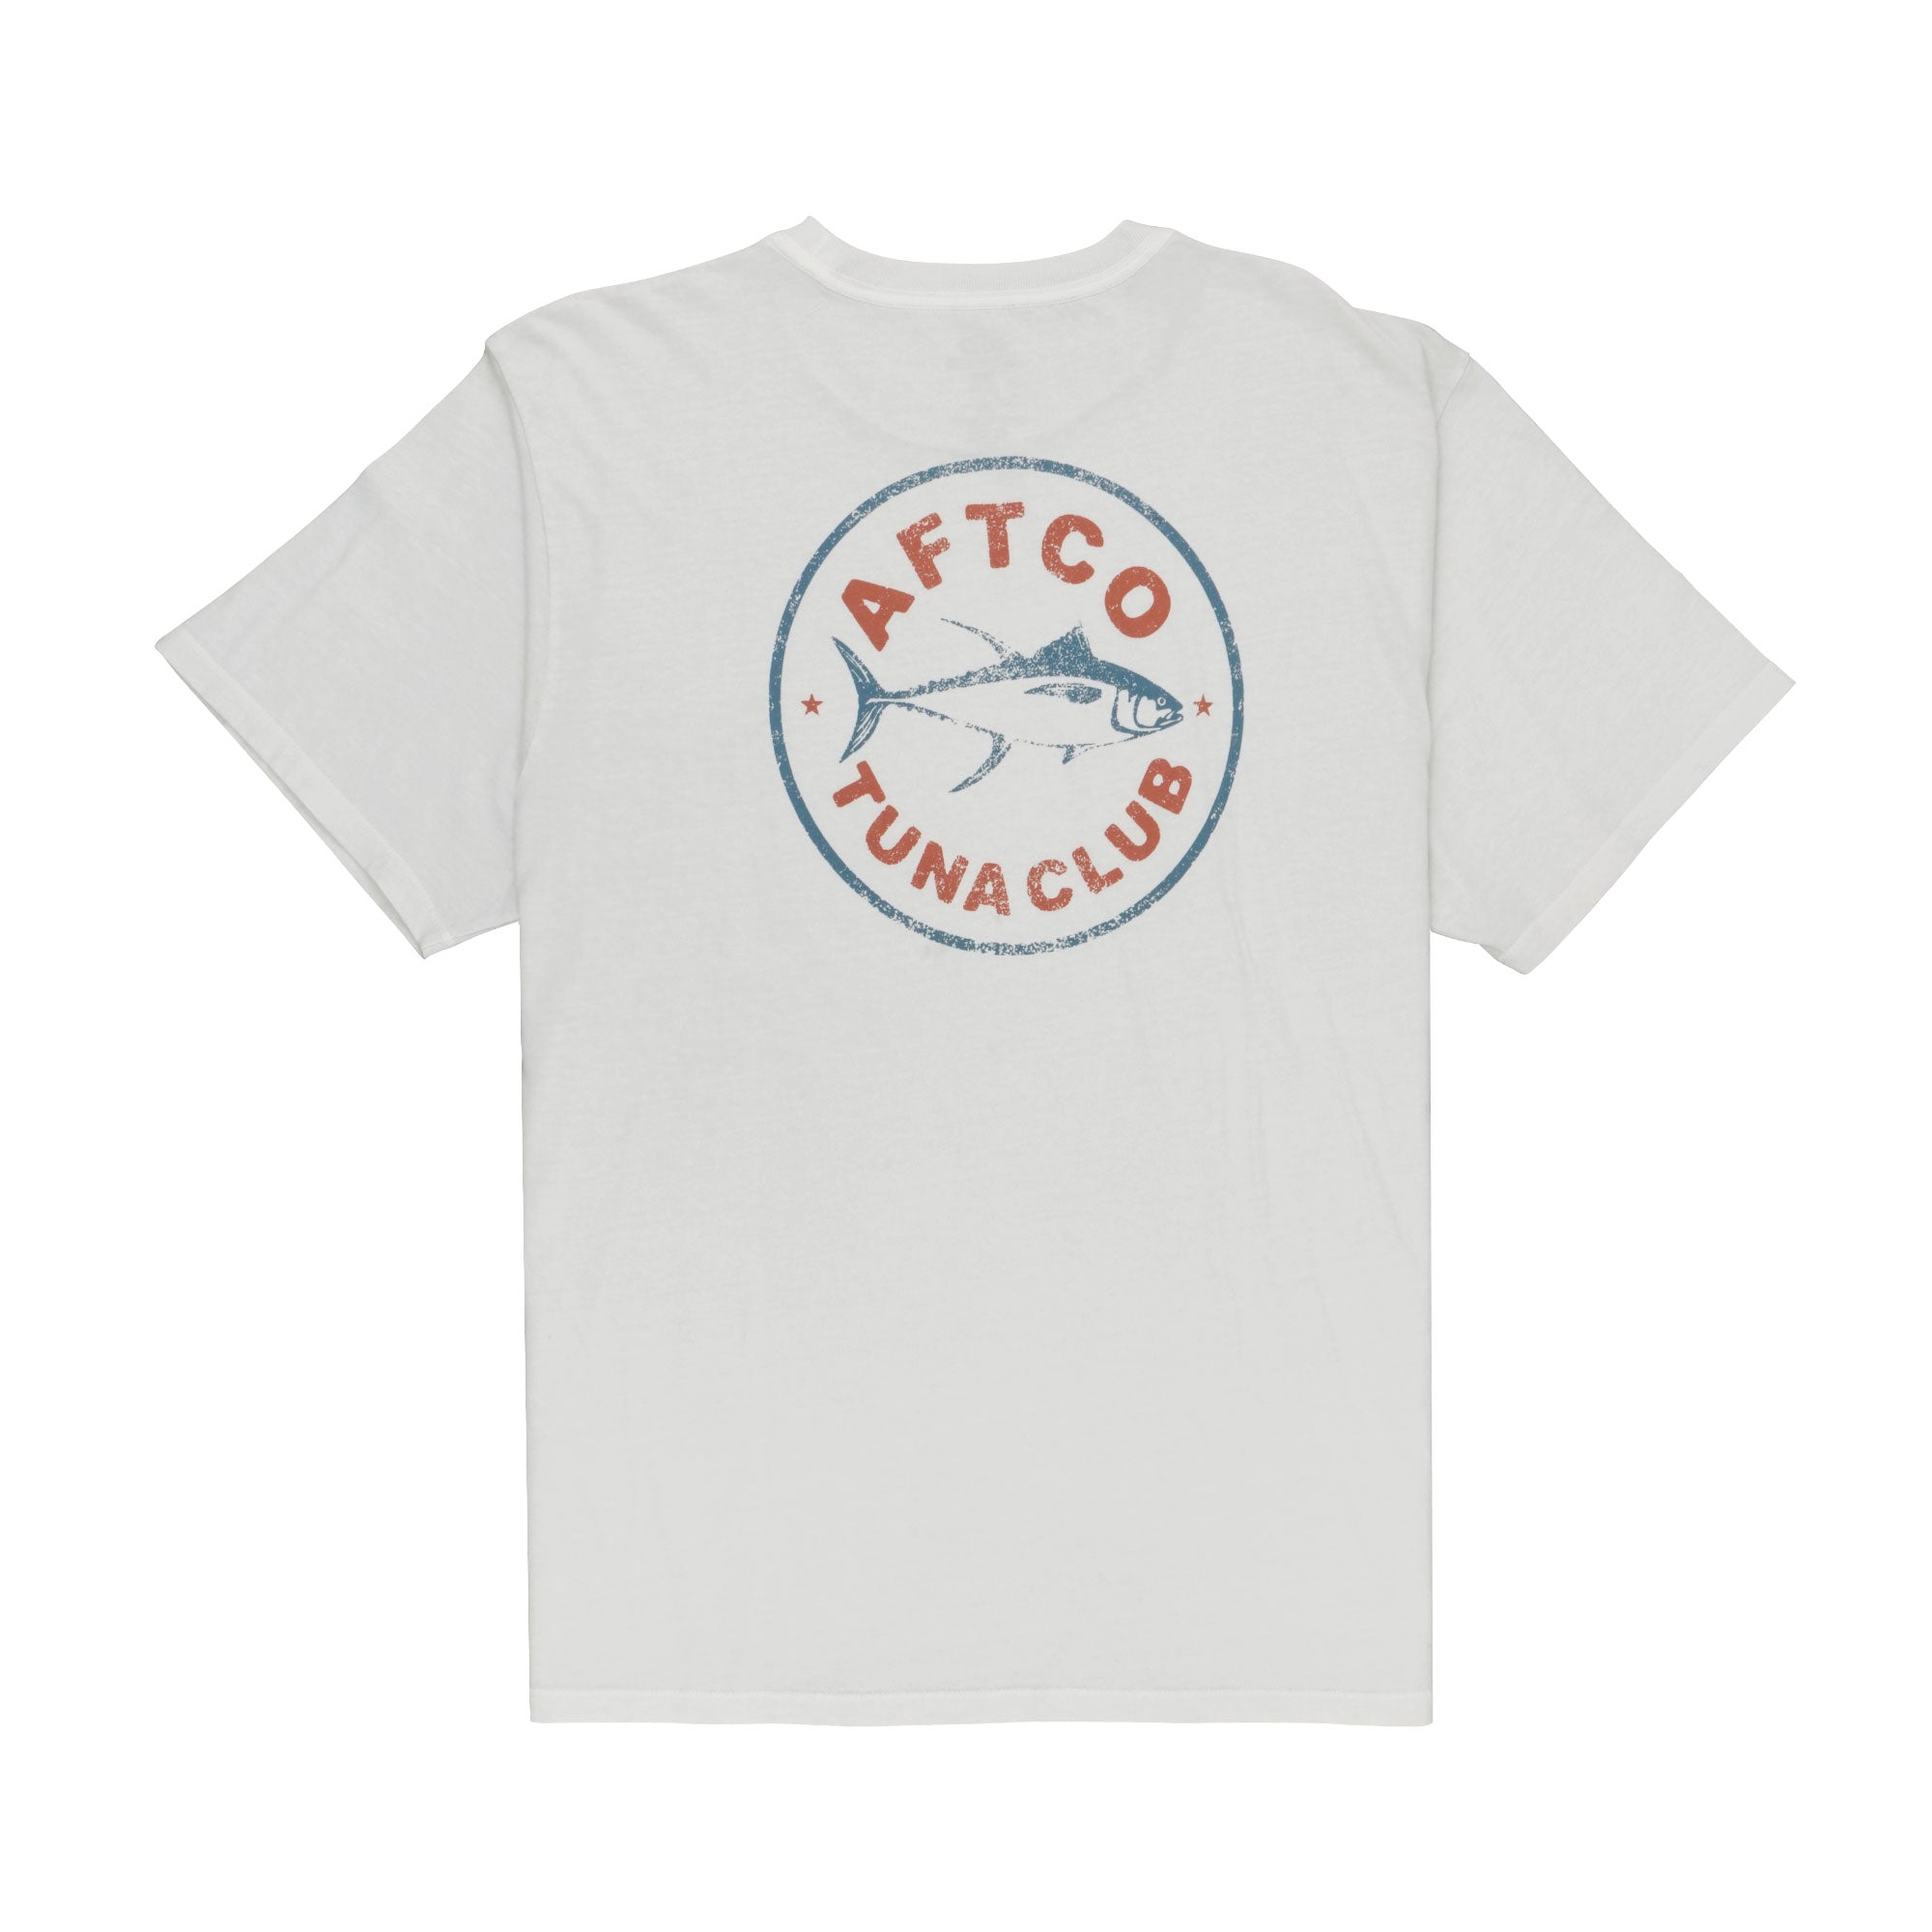 Tuna Club Saltwater Fishing T-Shirts